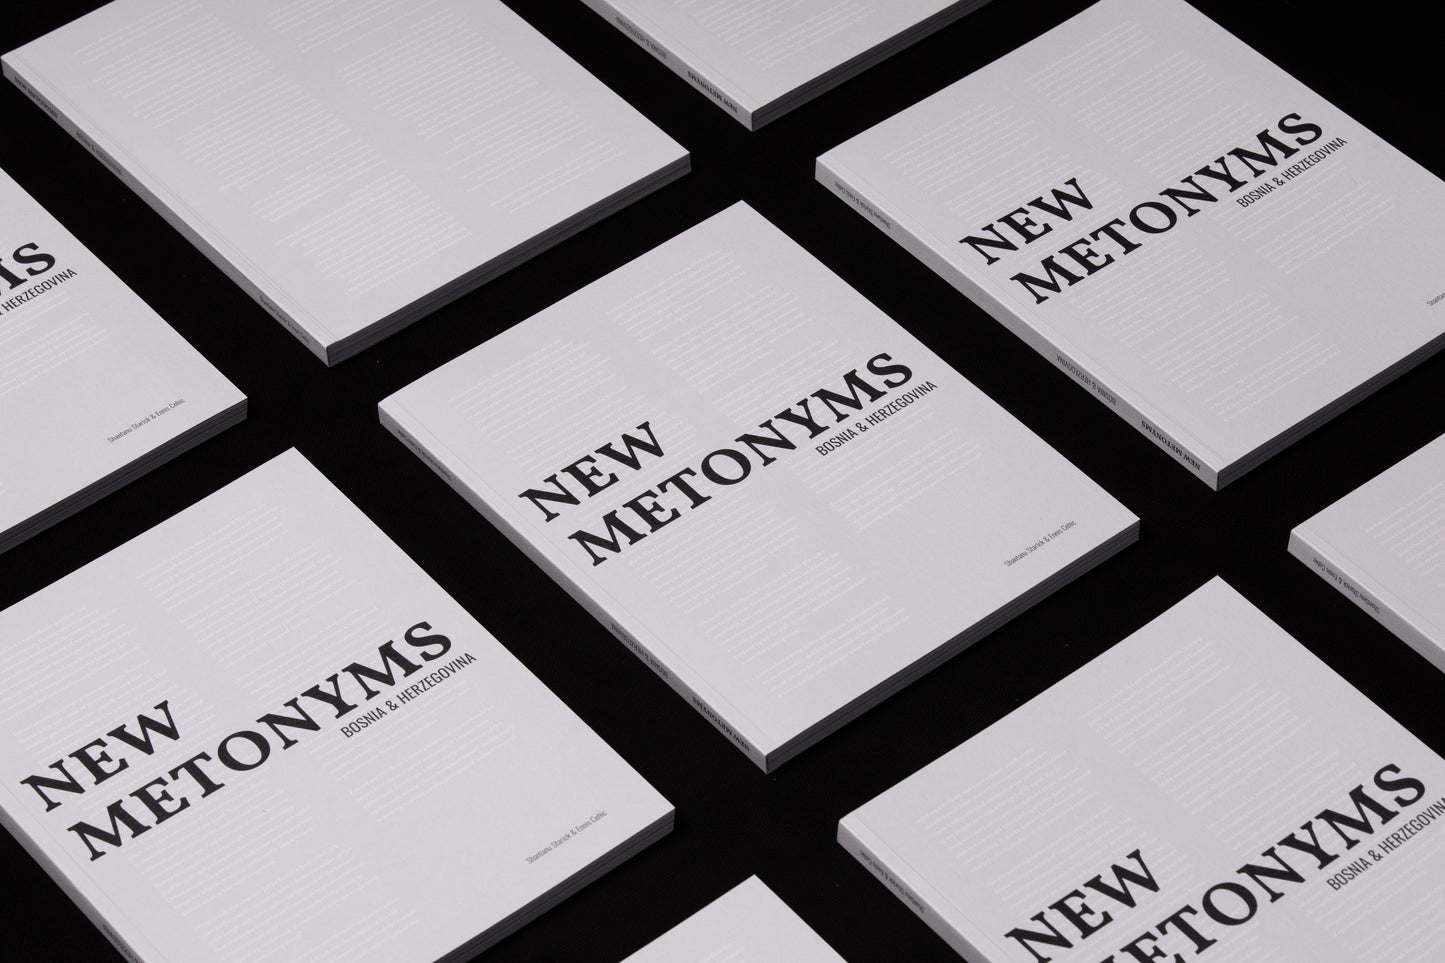 Book "New Metonyms" by Shantanu Starick & Ennis Cehic